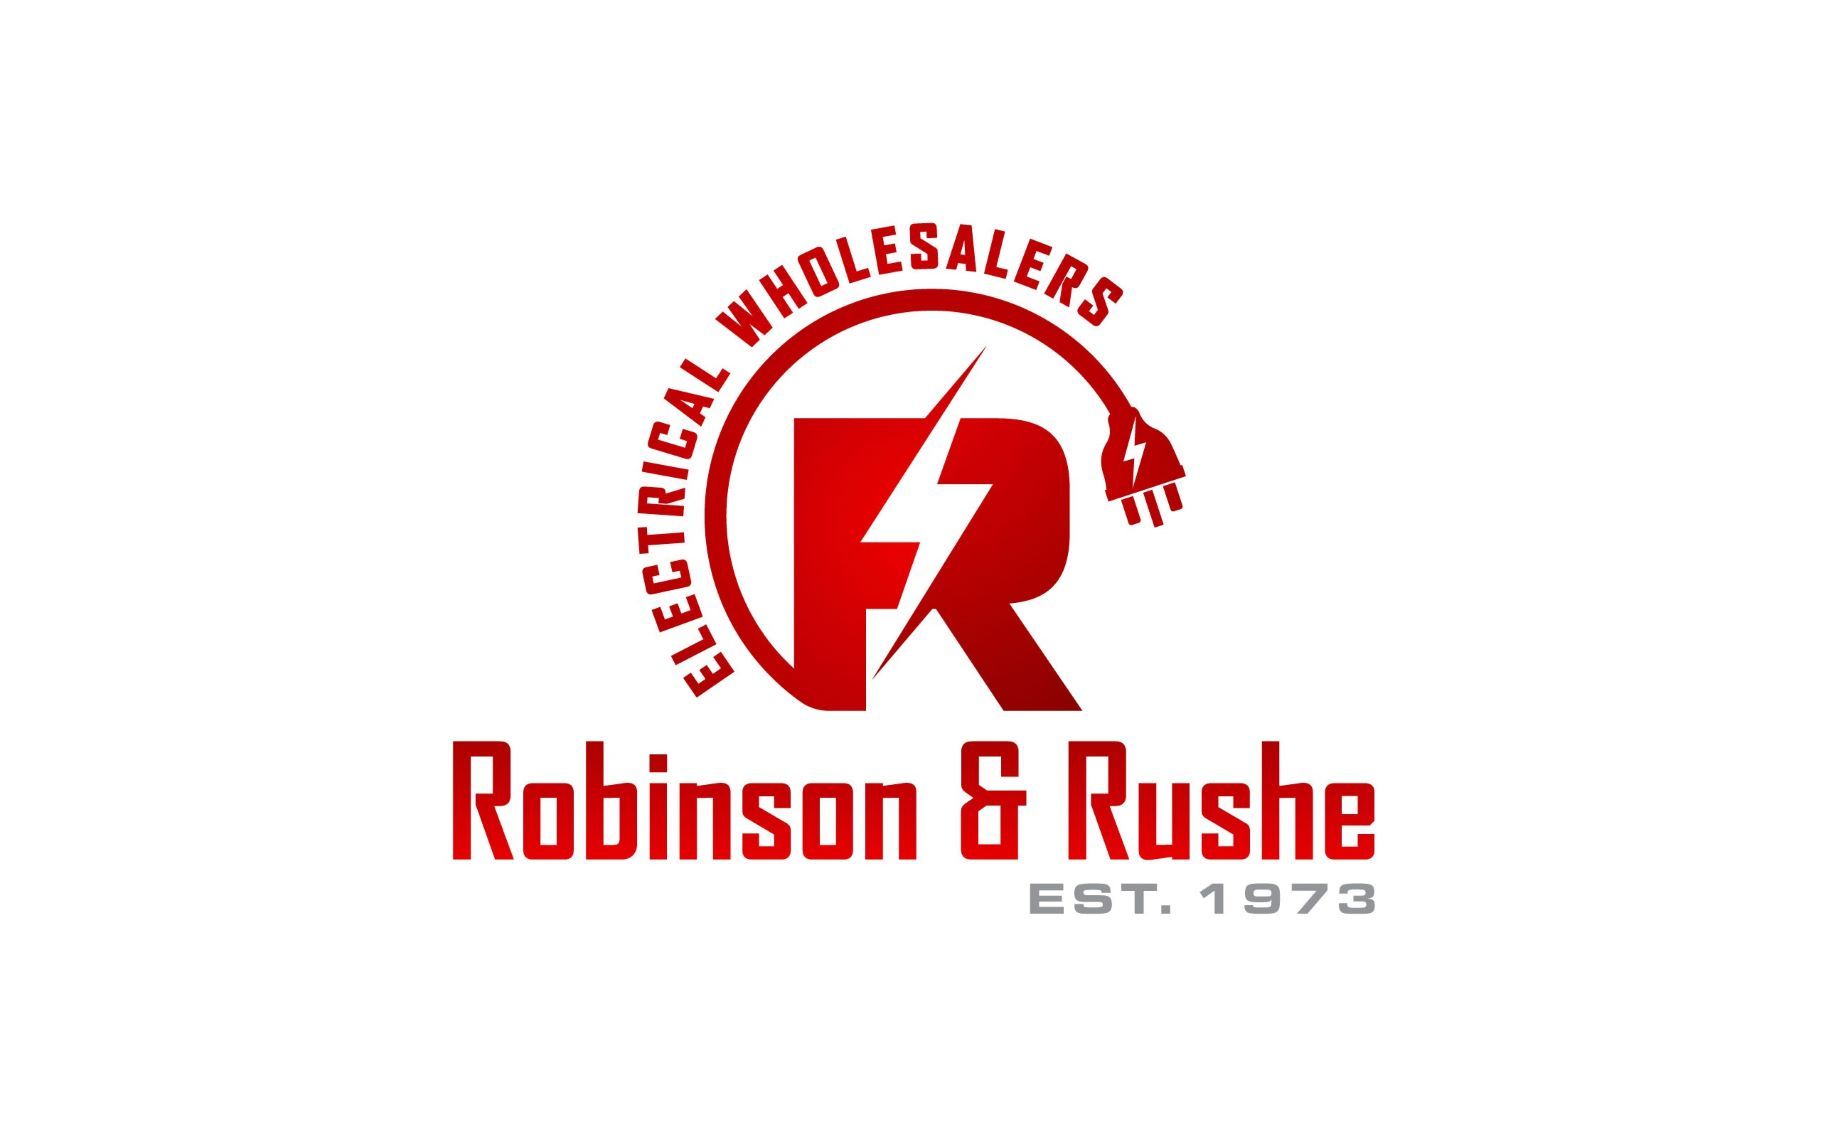 Robinson & Rushe Ltd